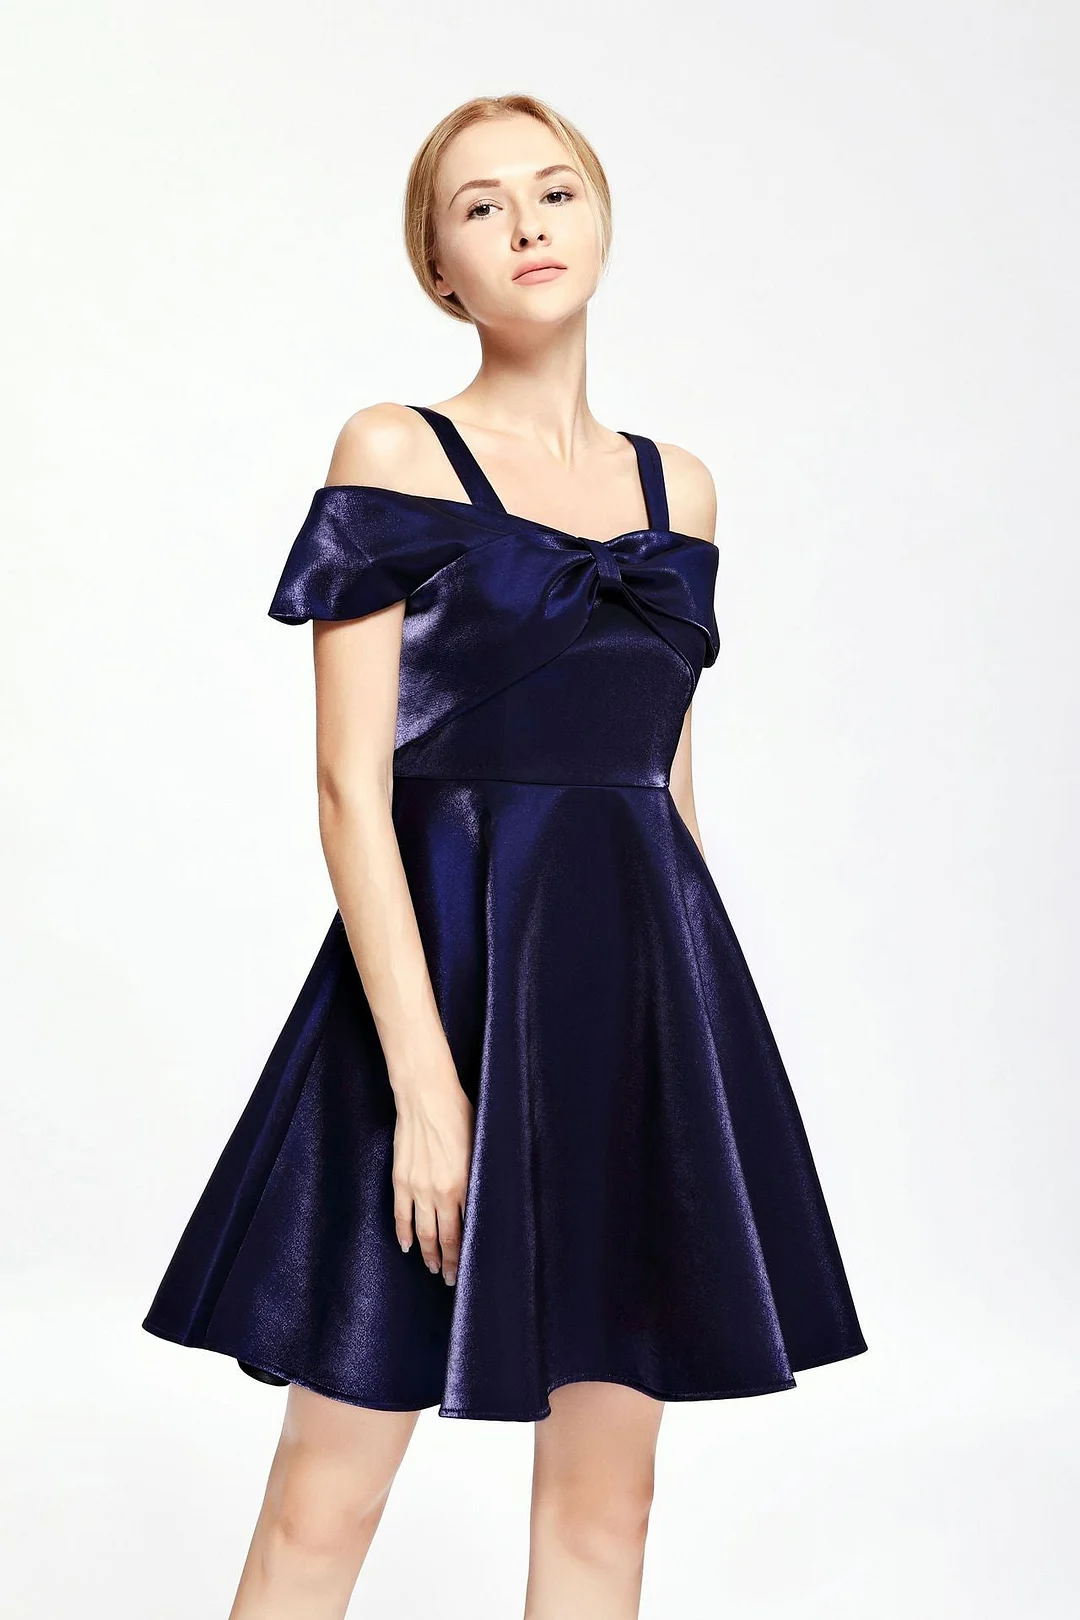 Neosepa-Off Shoulder Velvet Bow Decorated Slim Cocktail Dress Evening Dress